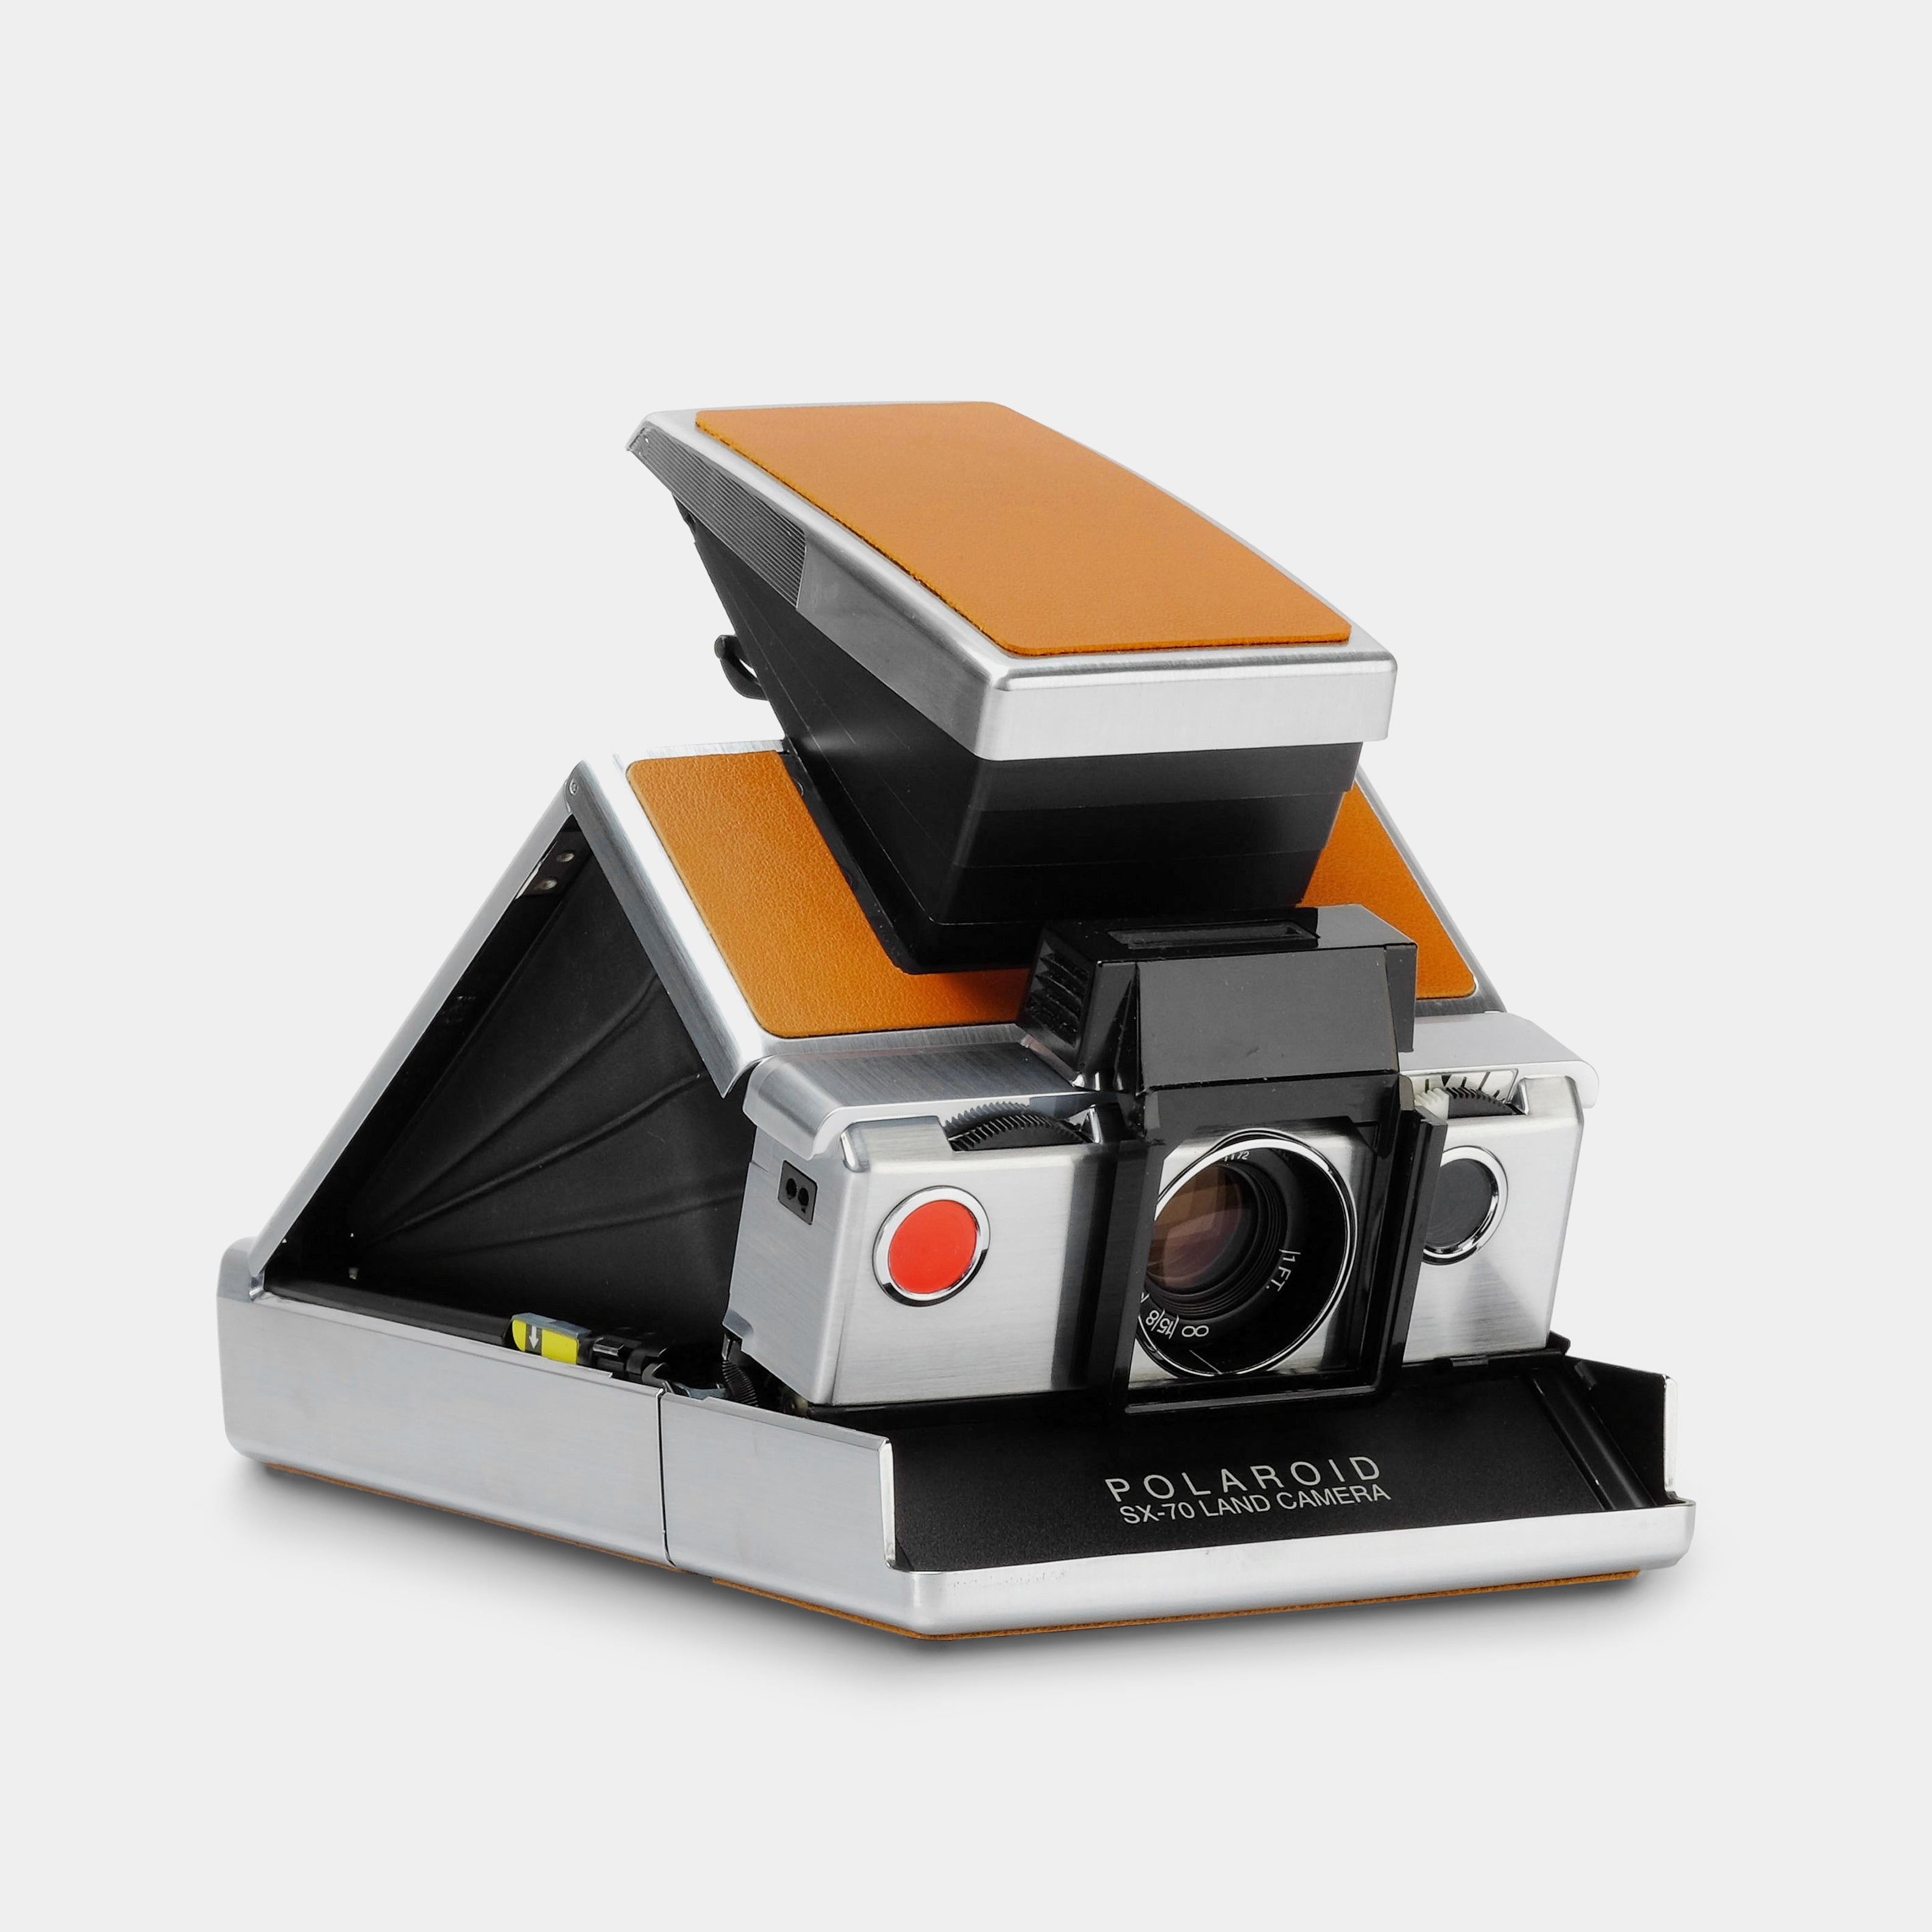 Polaroid SX-70 Folding Camera Accessory Holder 113